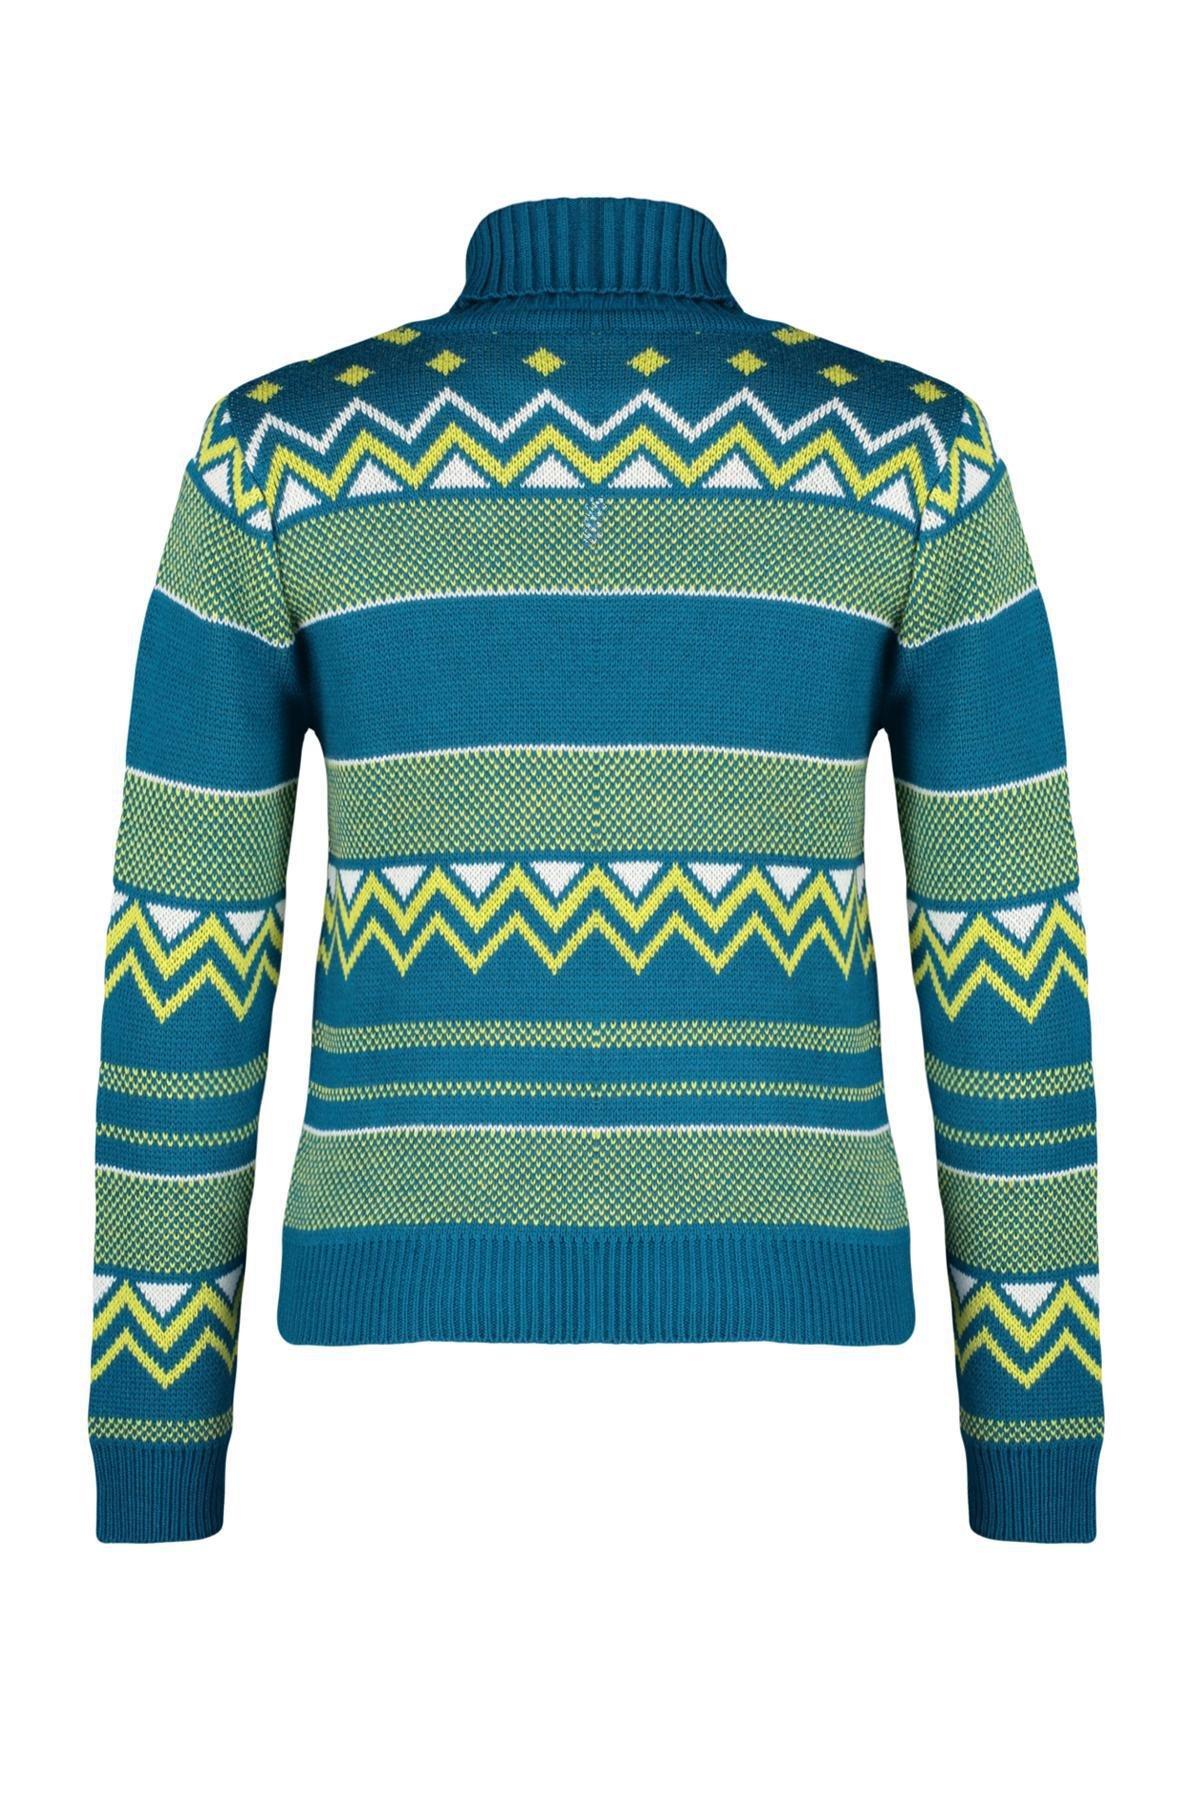 Trendyol - Navy Patterned Knitwear Sweater